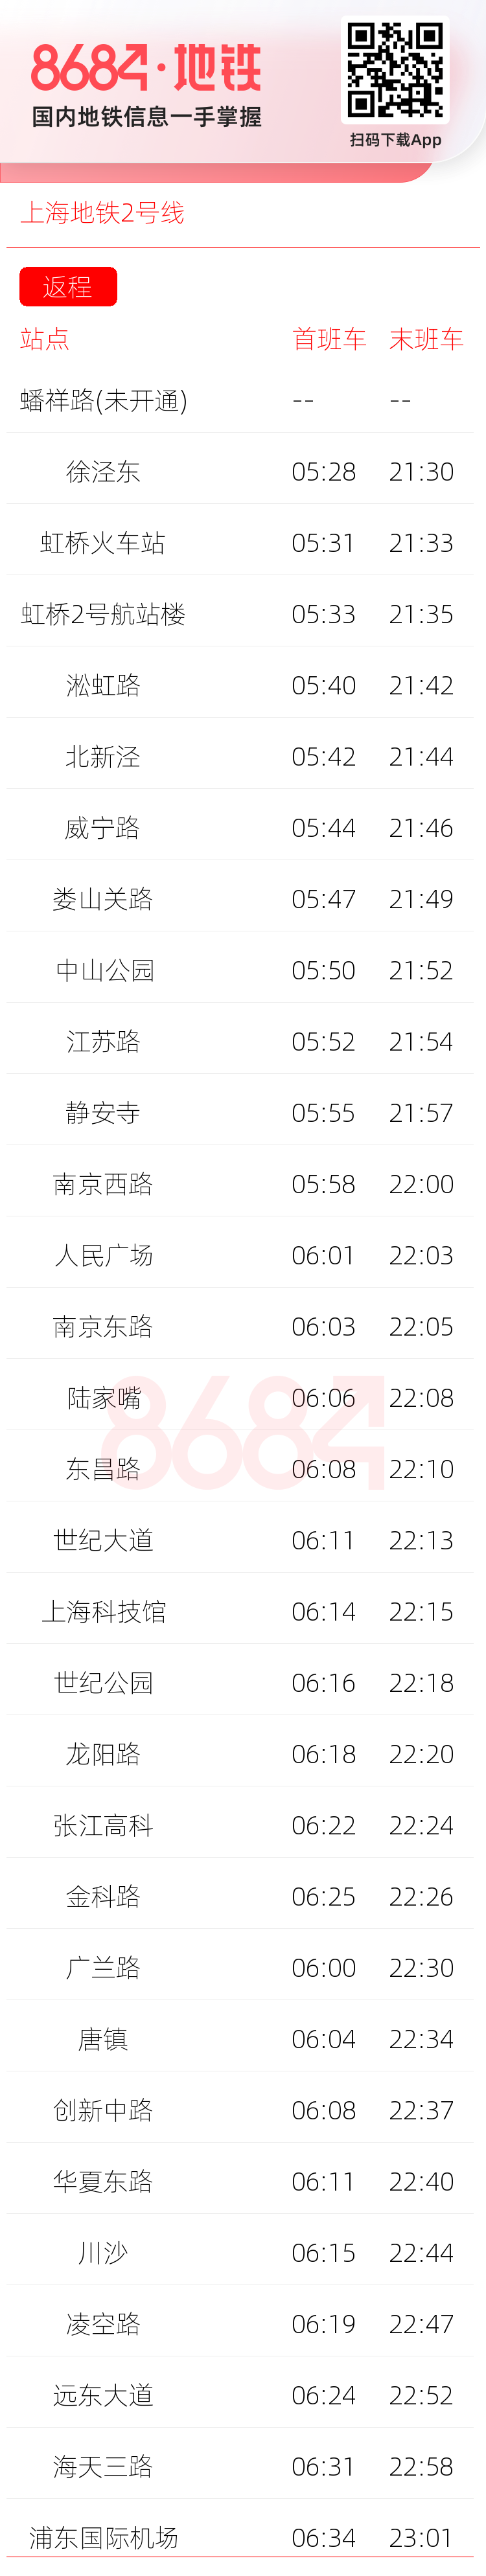 上海地铁2号线运营时间表